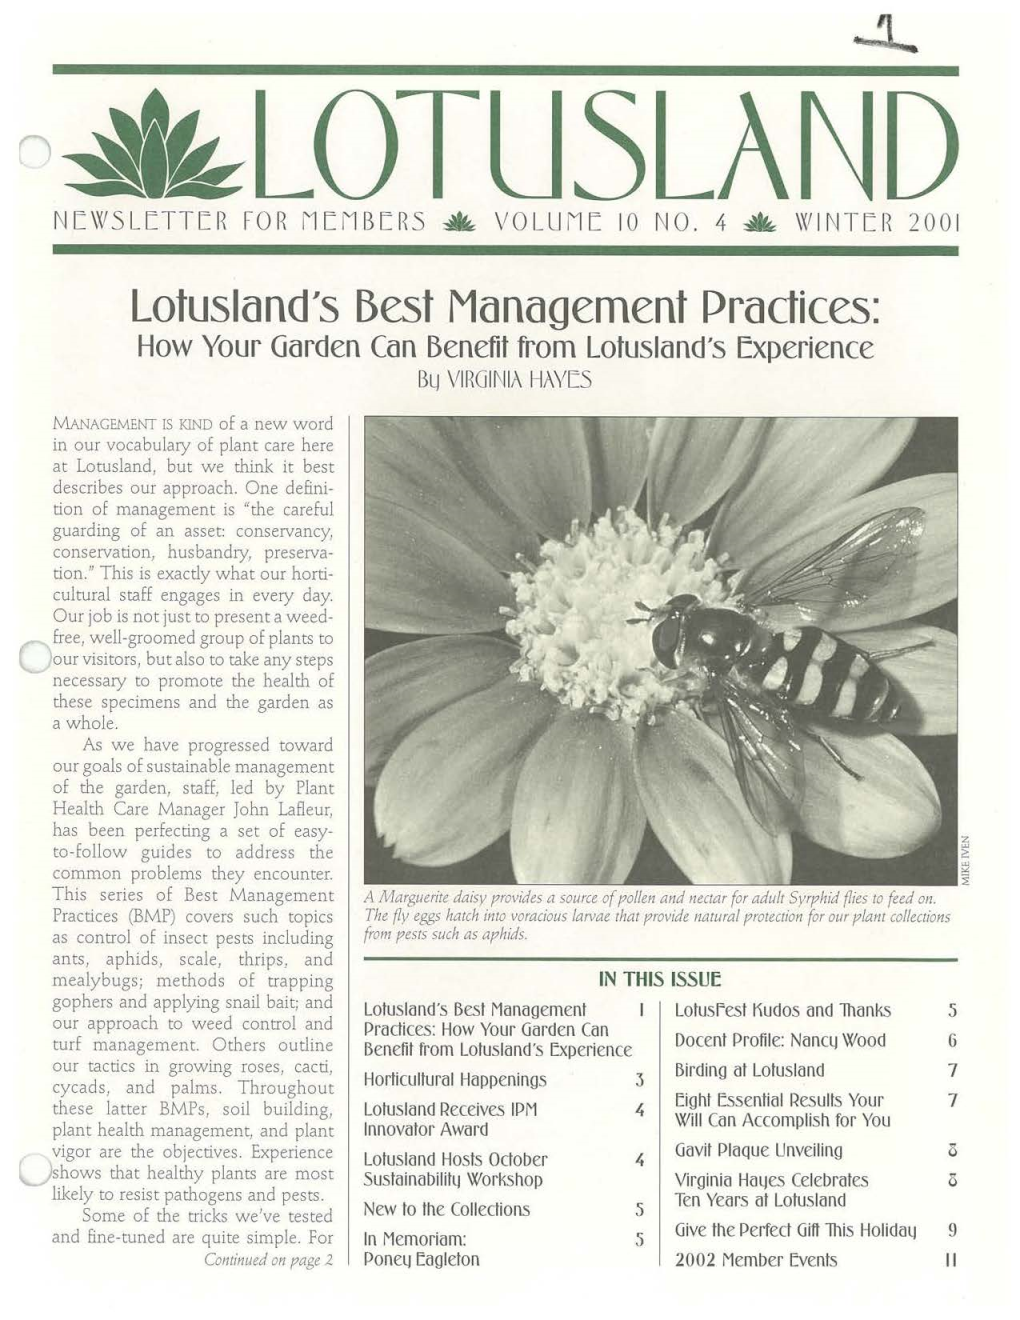 Lotusland's Best Management Practices